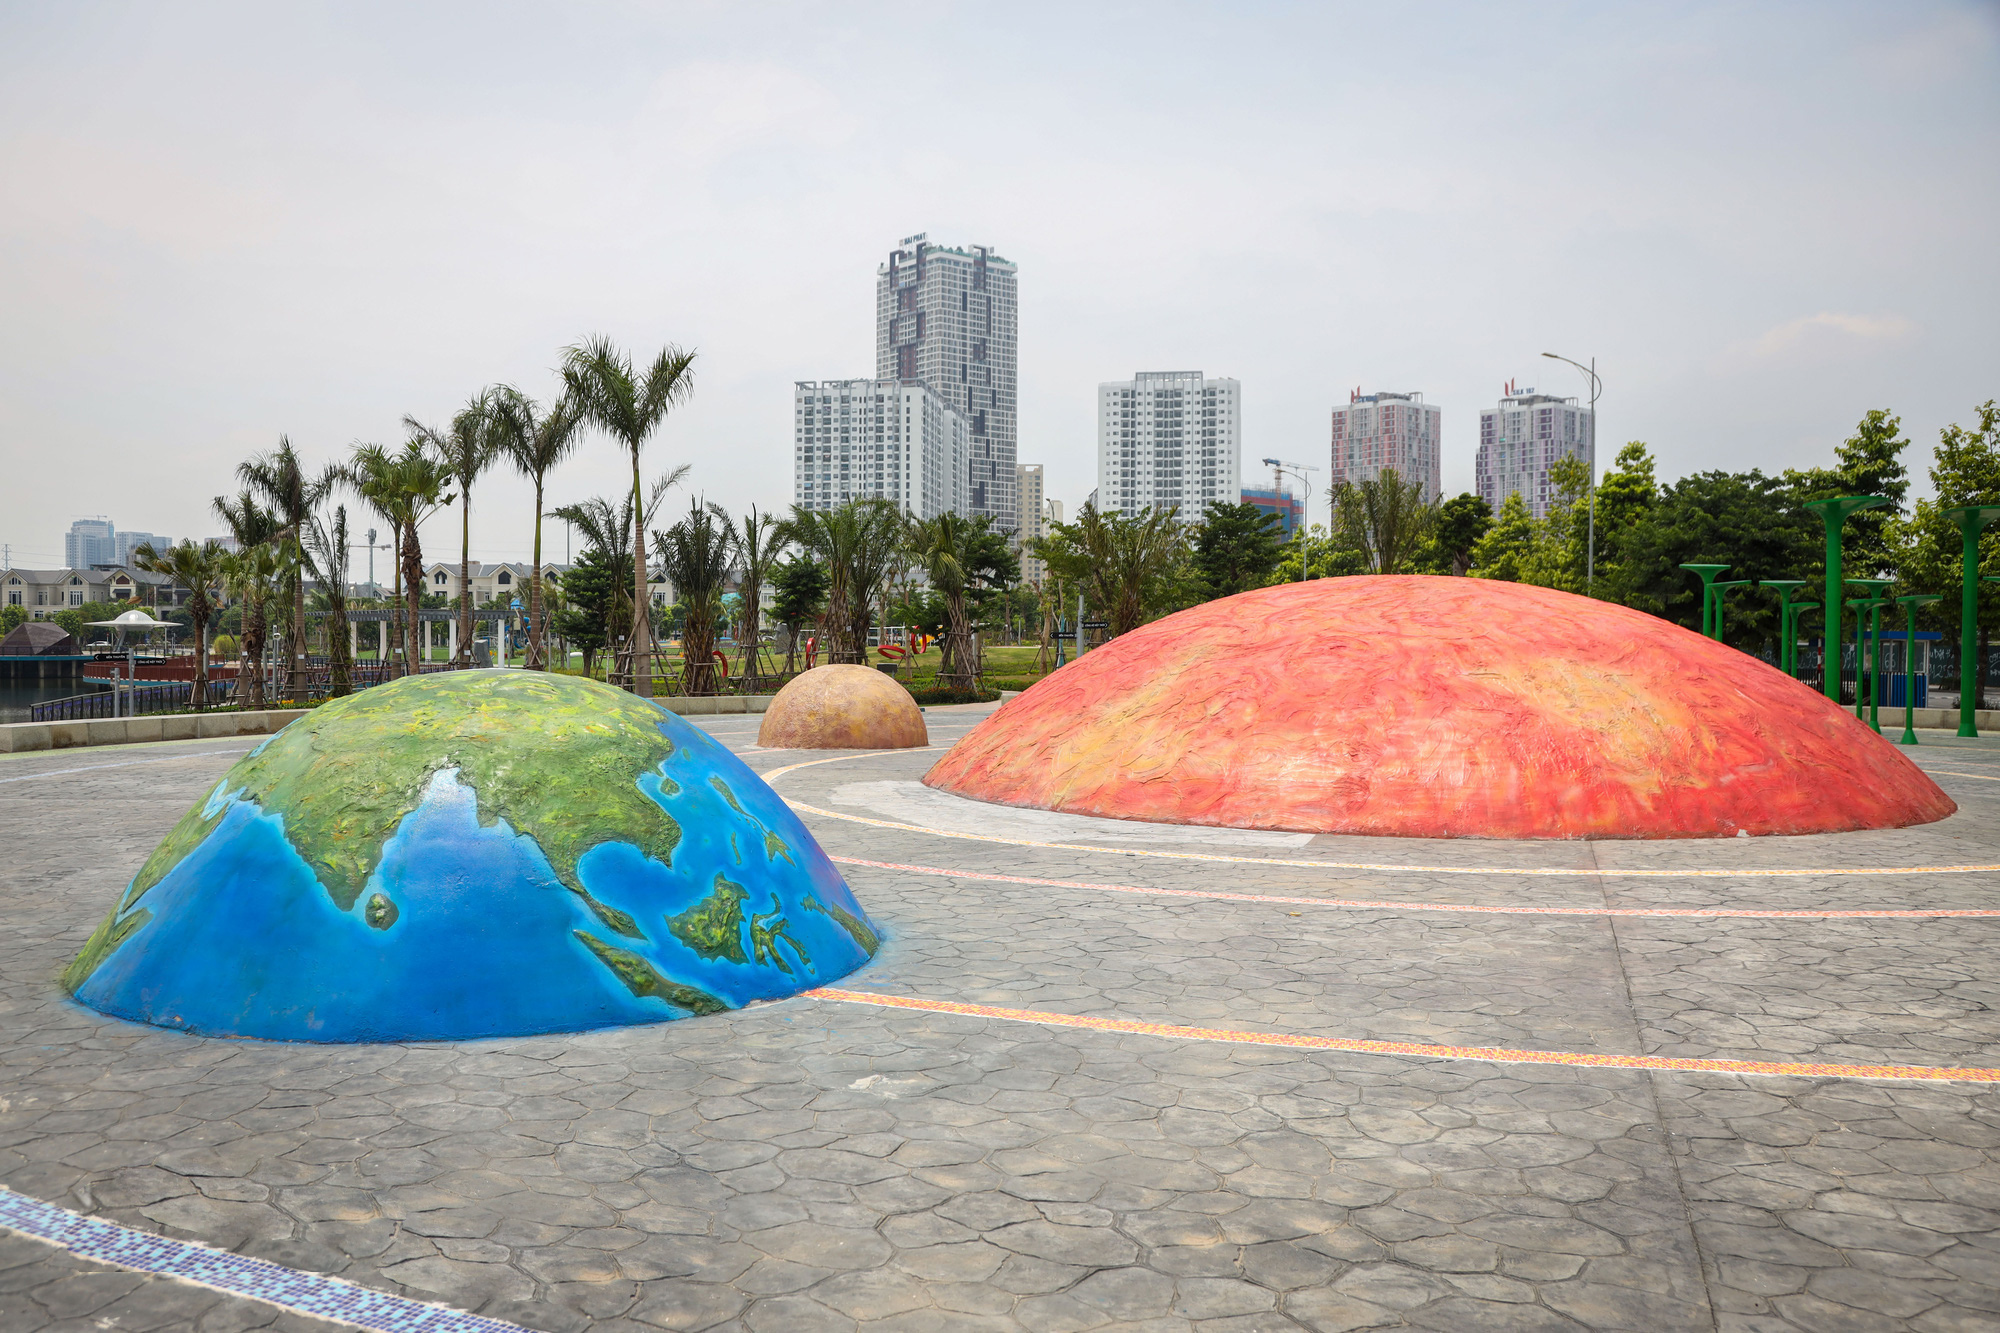  Hà Nội: Công viên Thiên văn học trị giá hàng trăm tỷ bỏ hoang kỳ lạ sau 2 năm hoàn thành - Ảnh 5.